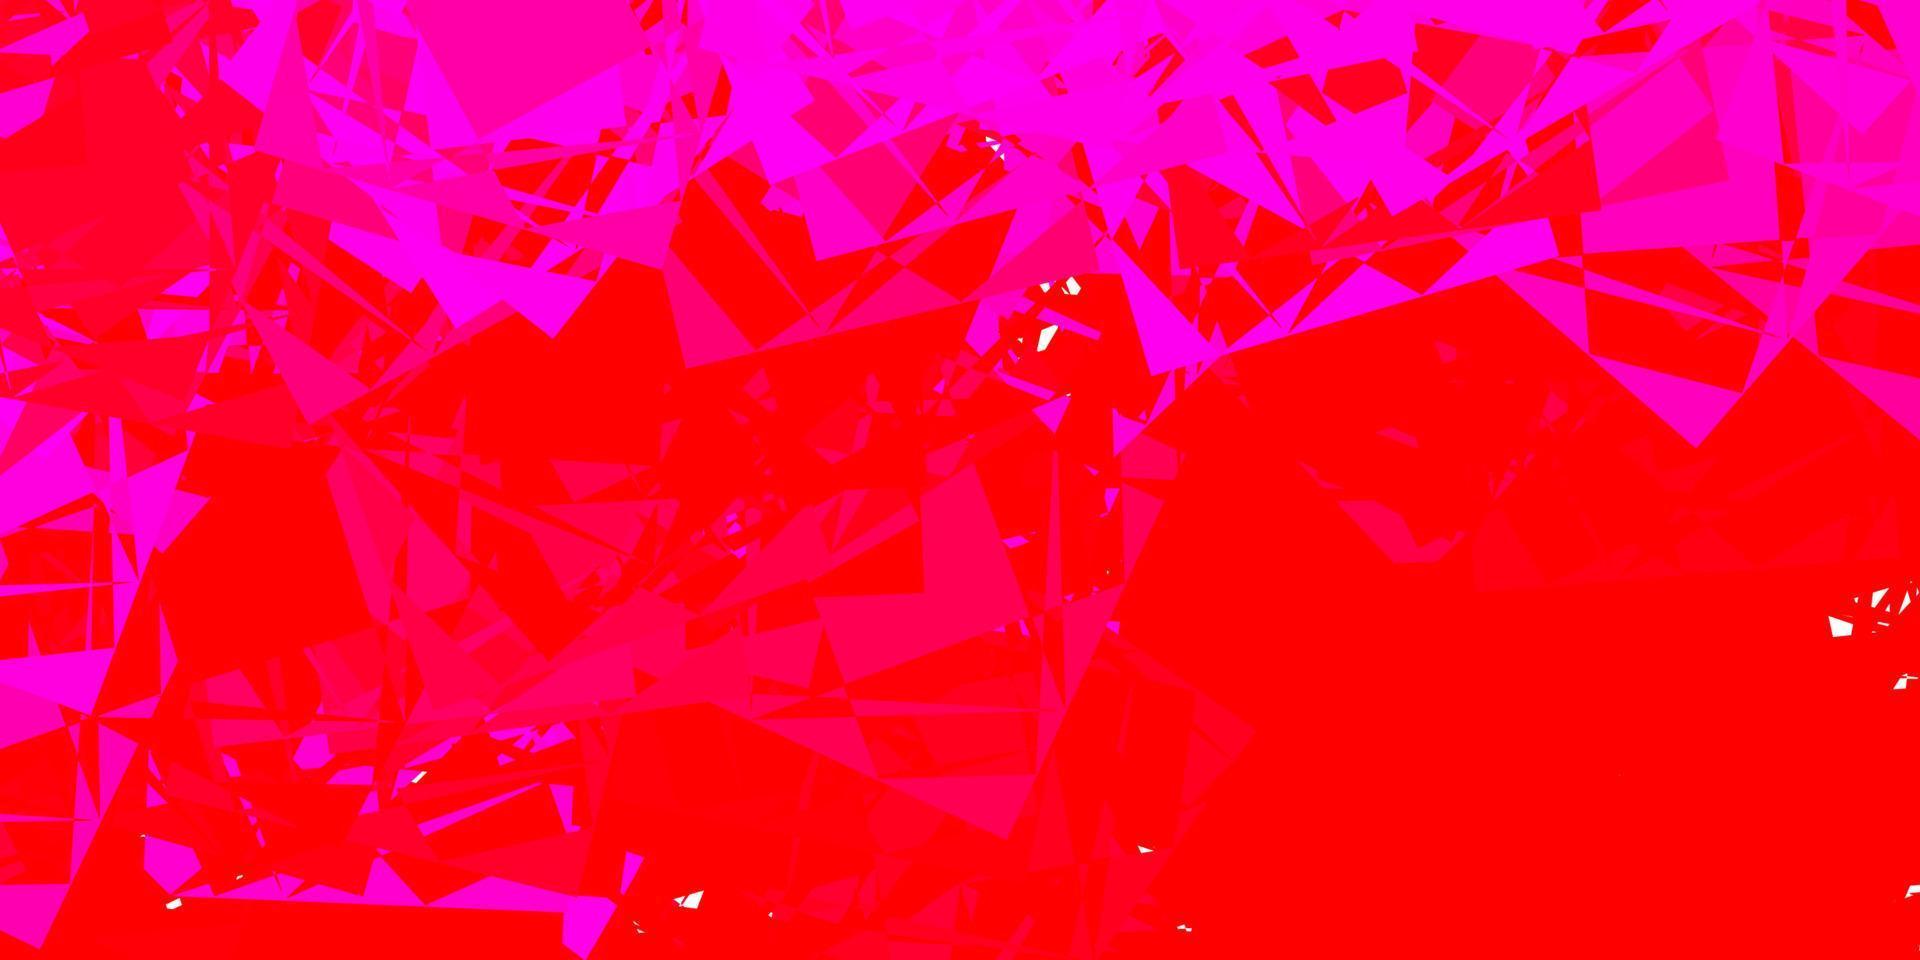 ljusrosa, röd vektorbakgrund med kaotiska former. vektor